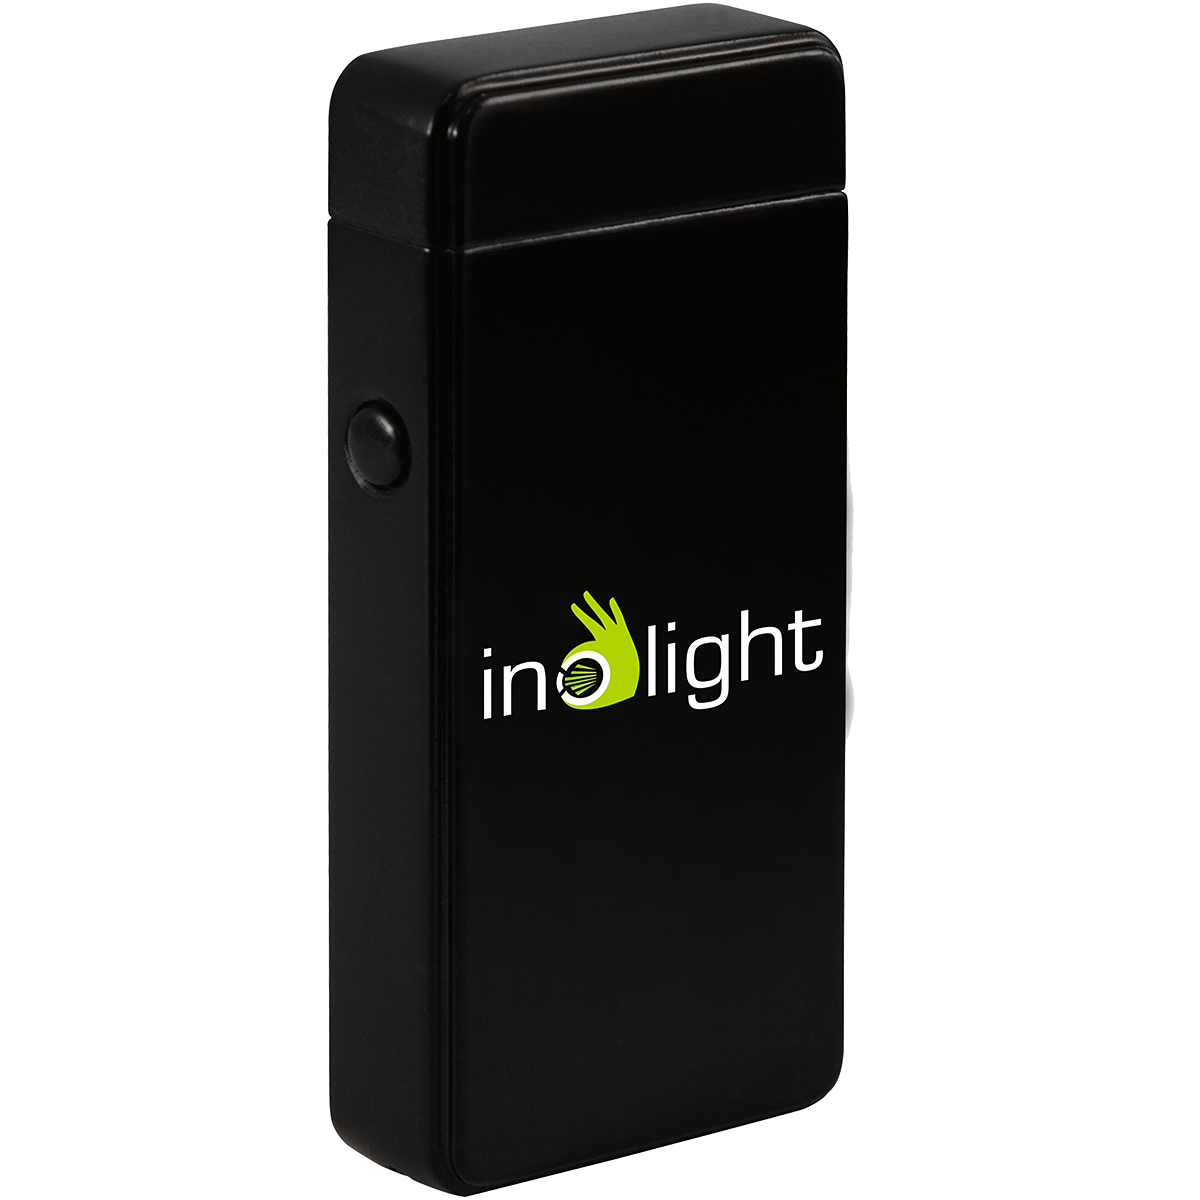 Inolight CL6 kompakt Elektrisk tändare, Micro-USB, väder-säker